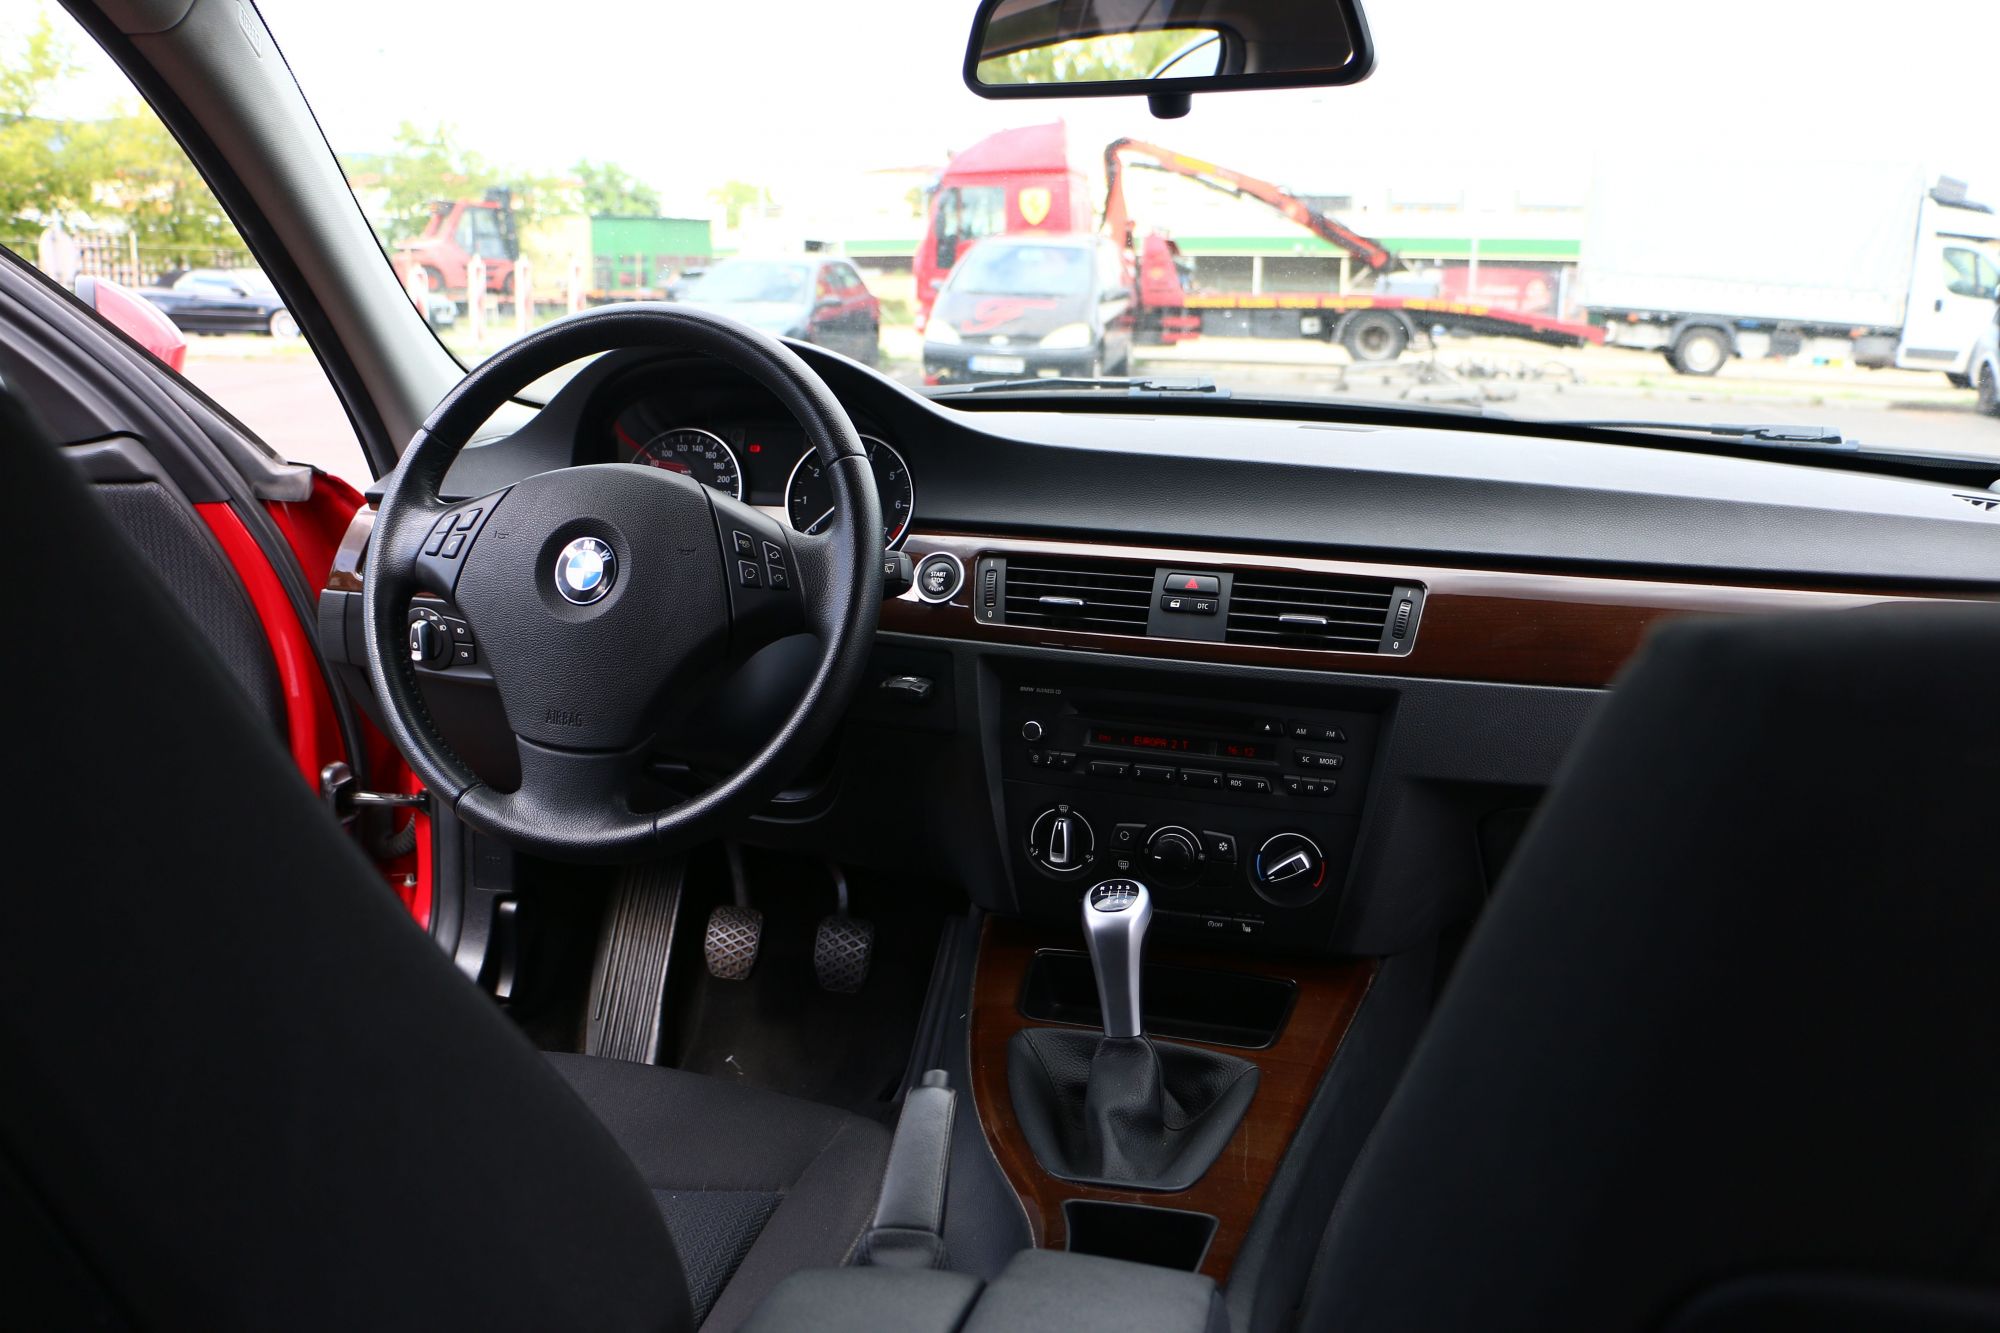 Foto: BMW 318i, 2.0 SPORTLINE EDITION